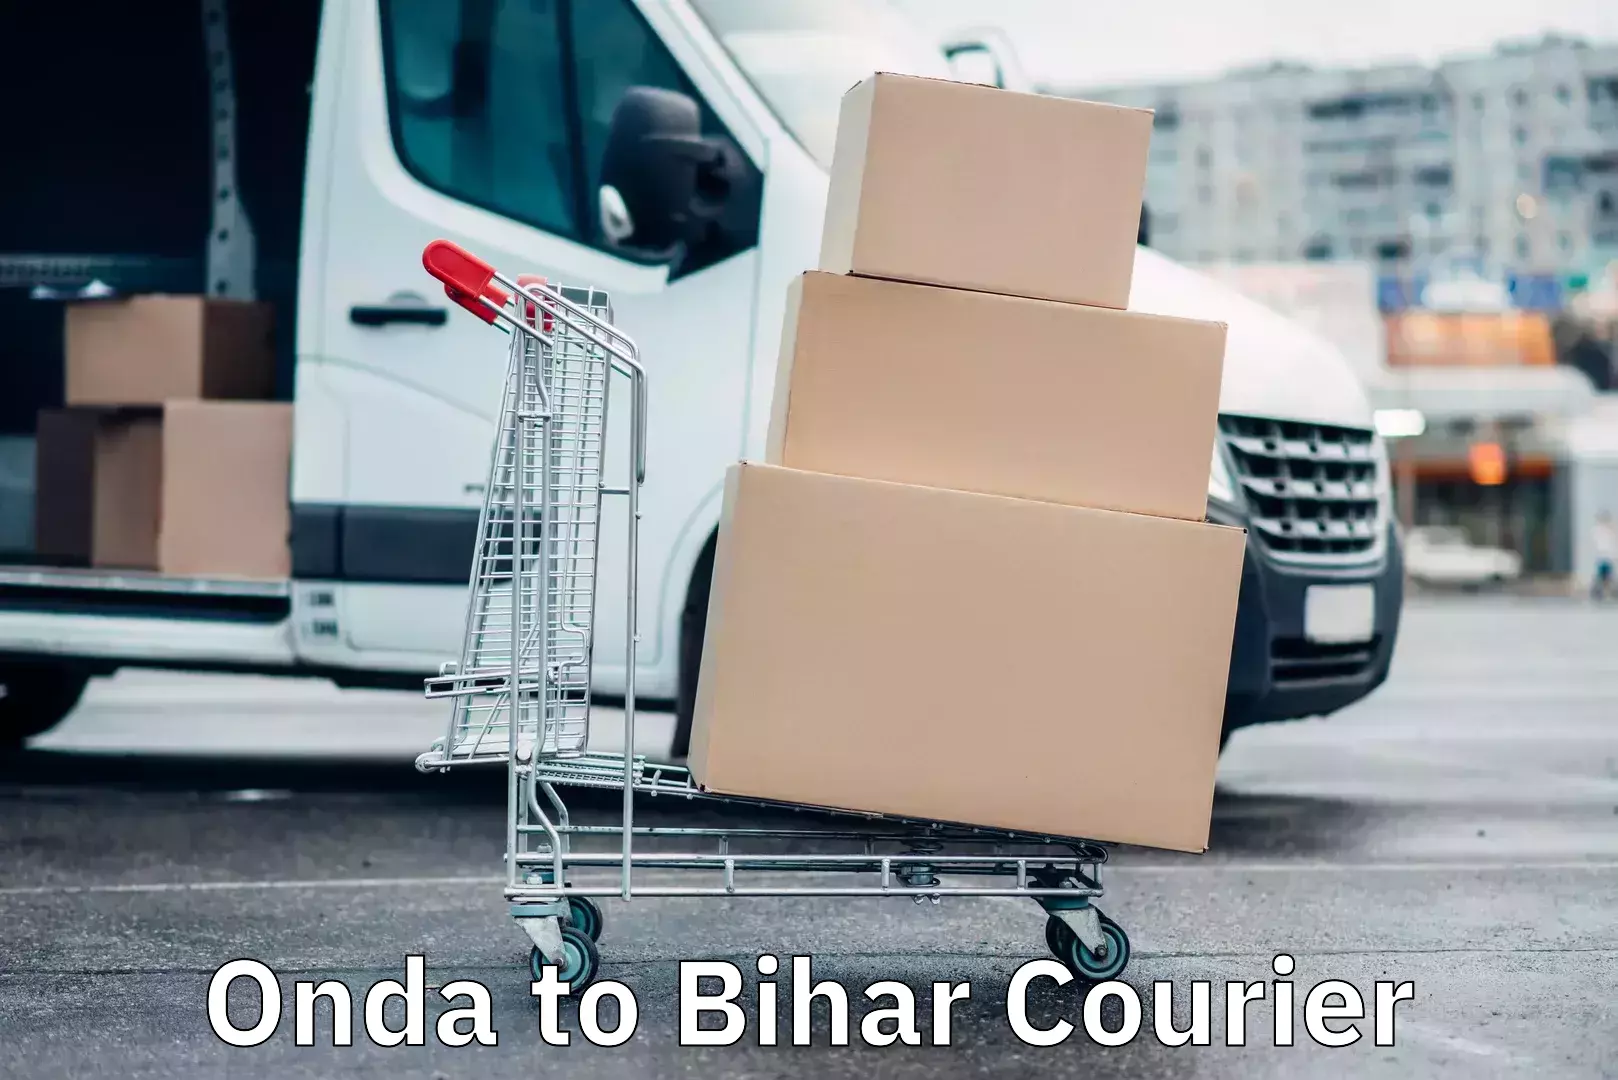 24-hour courier service Onda to Bihar